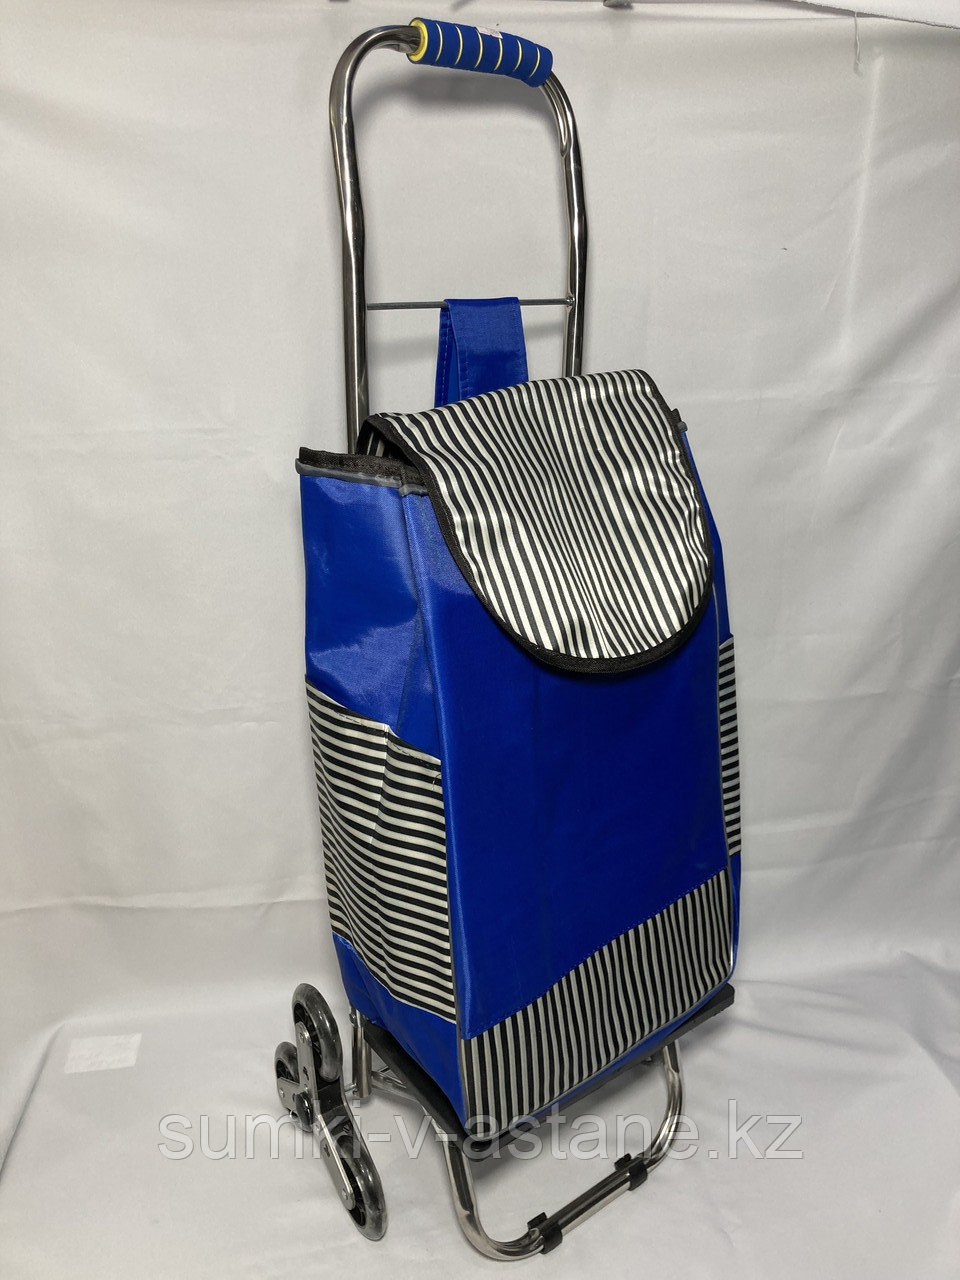 Продуктовая сумка-тележка для подъёма по ступенькам (шагающая). Высота 98 см, ширина 35 см. глубина 25 см.